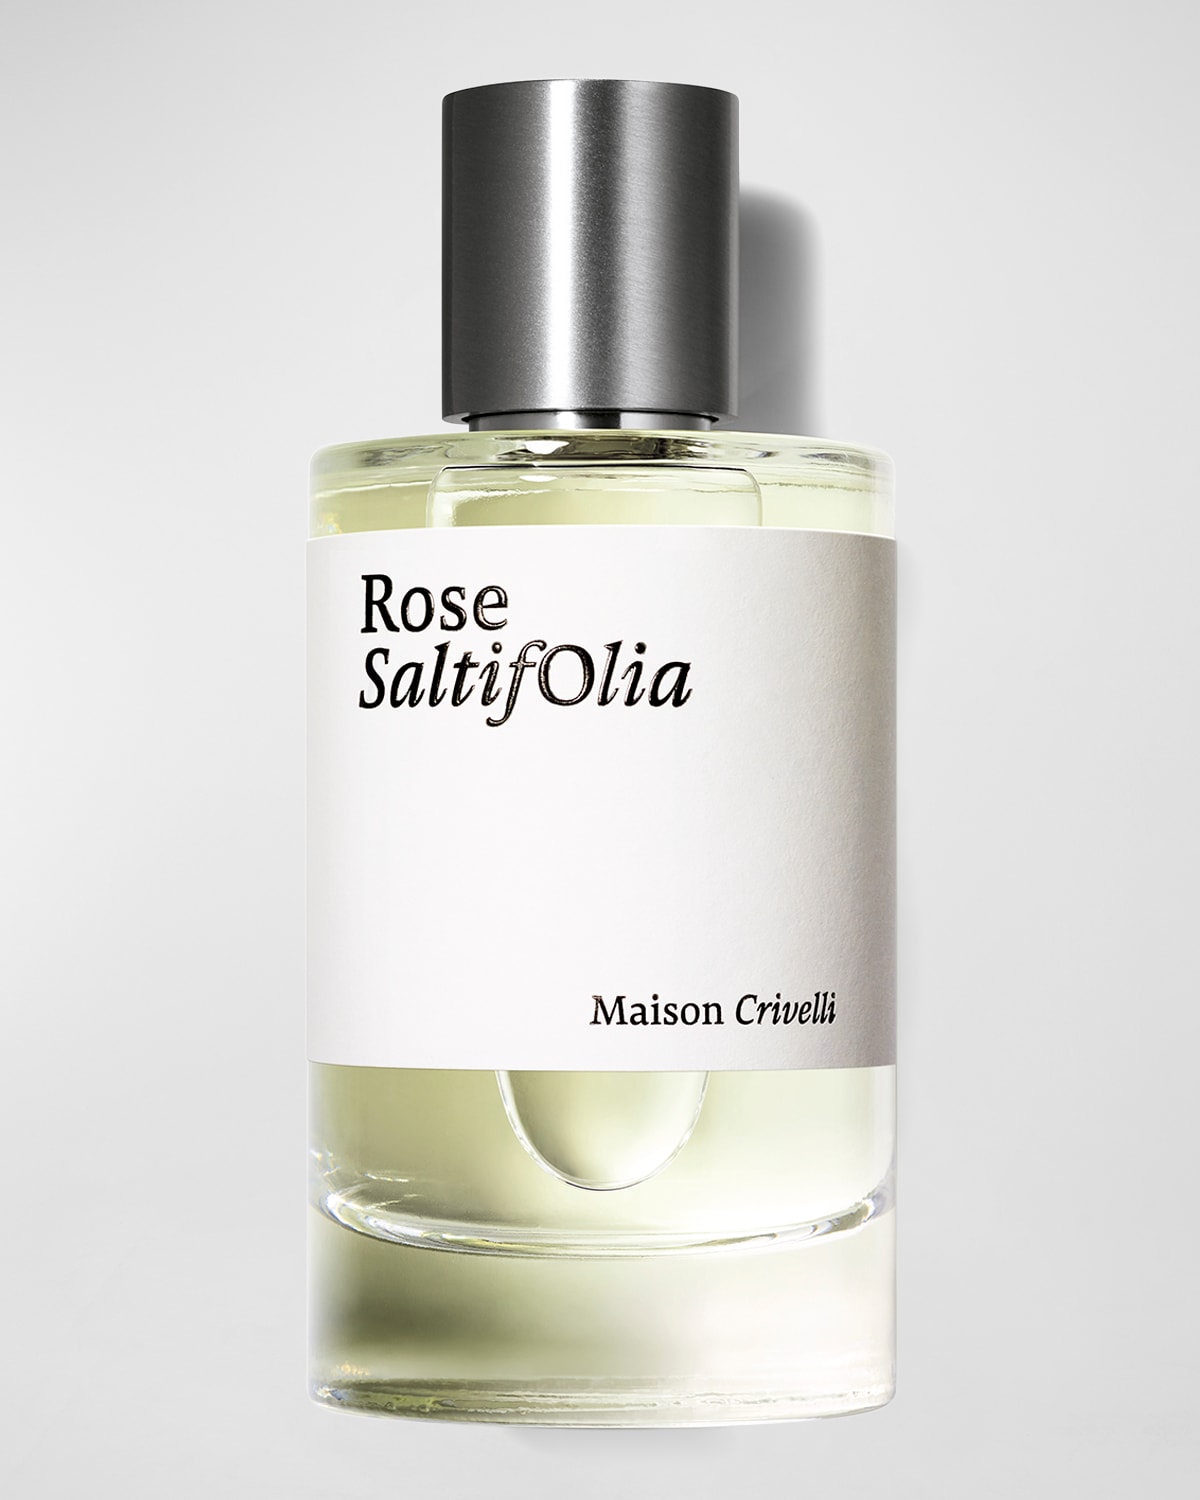 Maison Crivelli Rose Saltifolia Eau de Parfum, 3.4 oz.